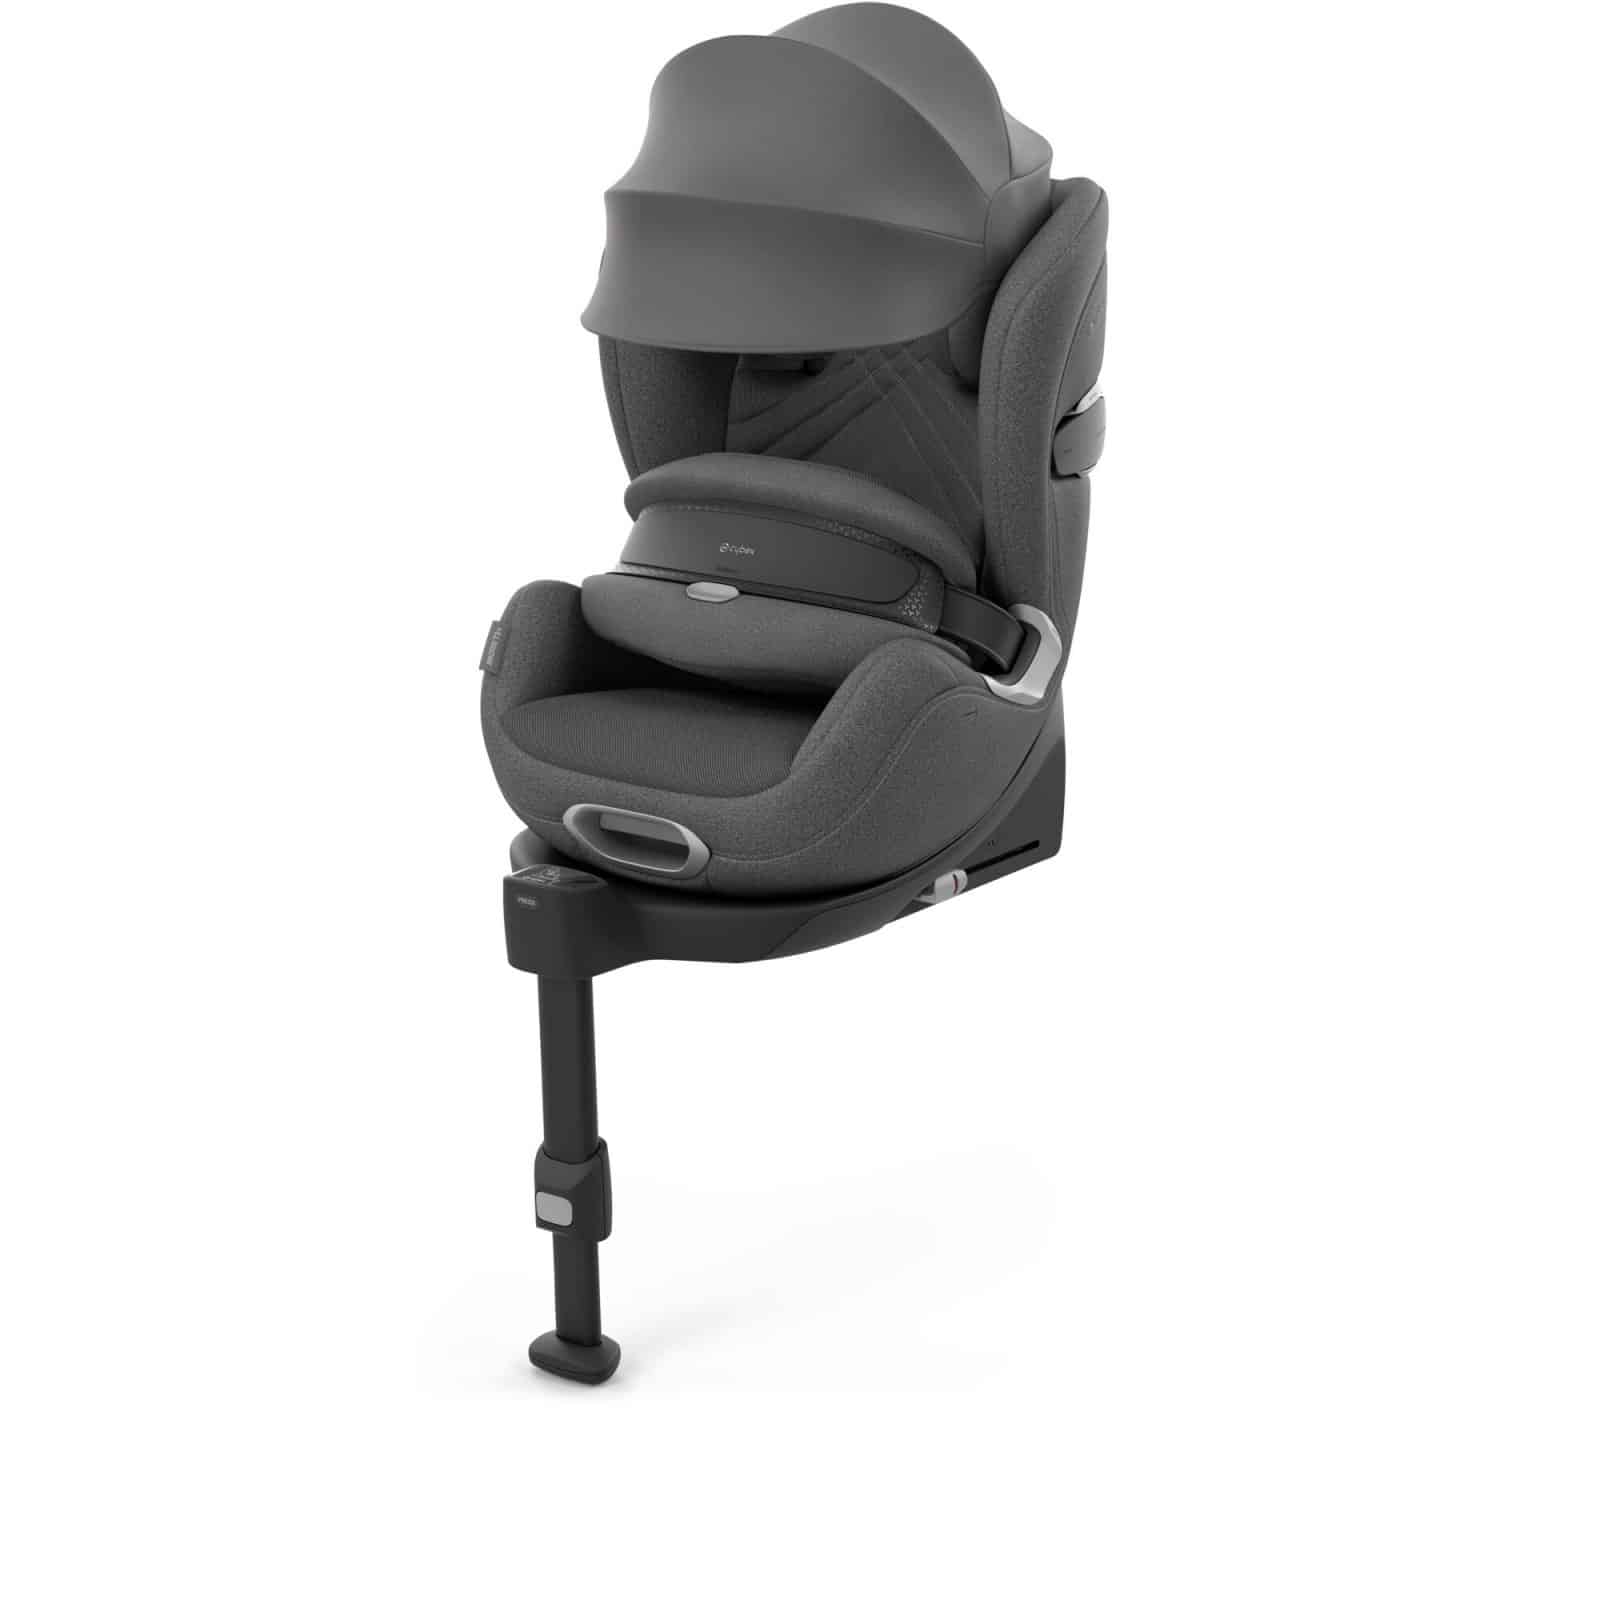 El Anoris T2 es uno de los sistemas de retención infantil de CYBEX que cuentan con airbag